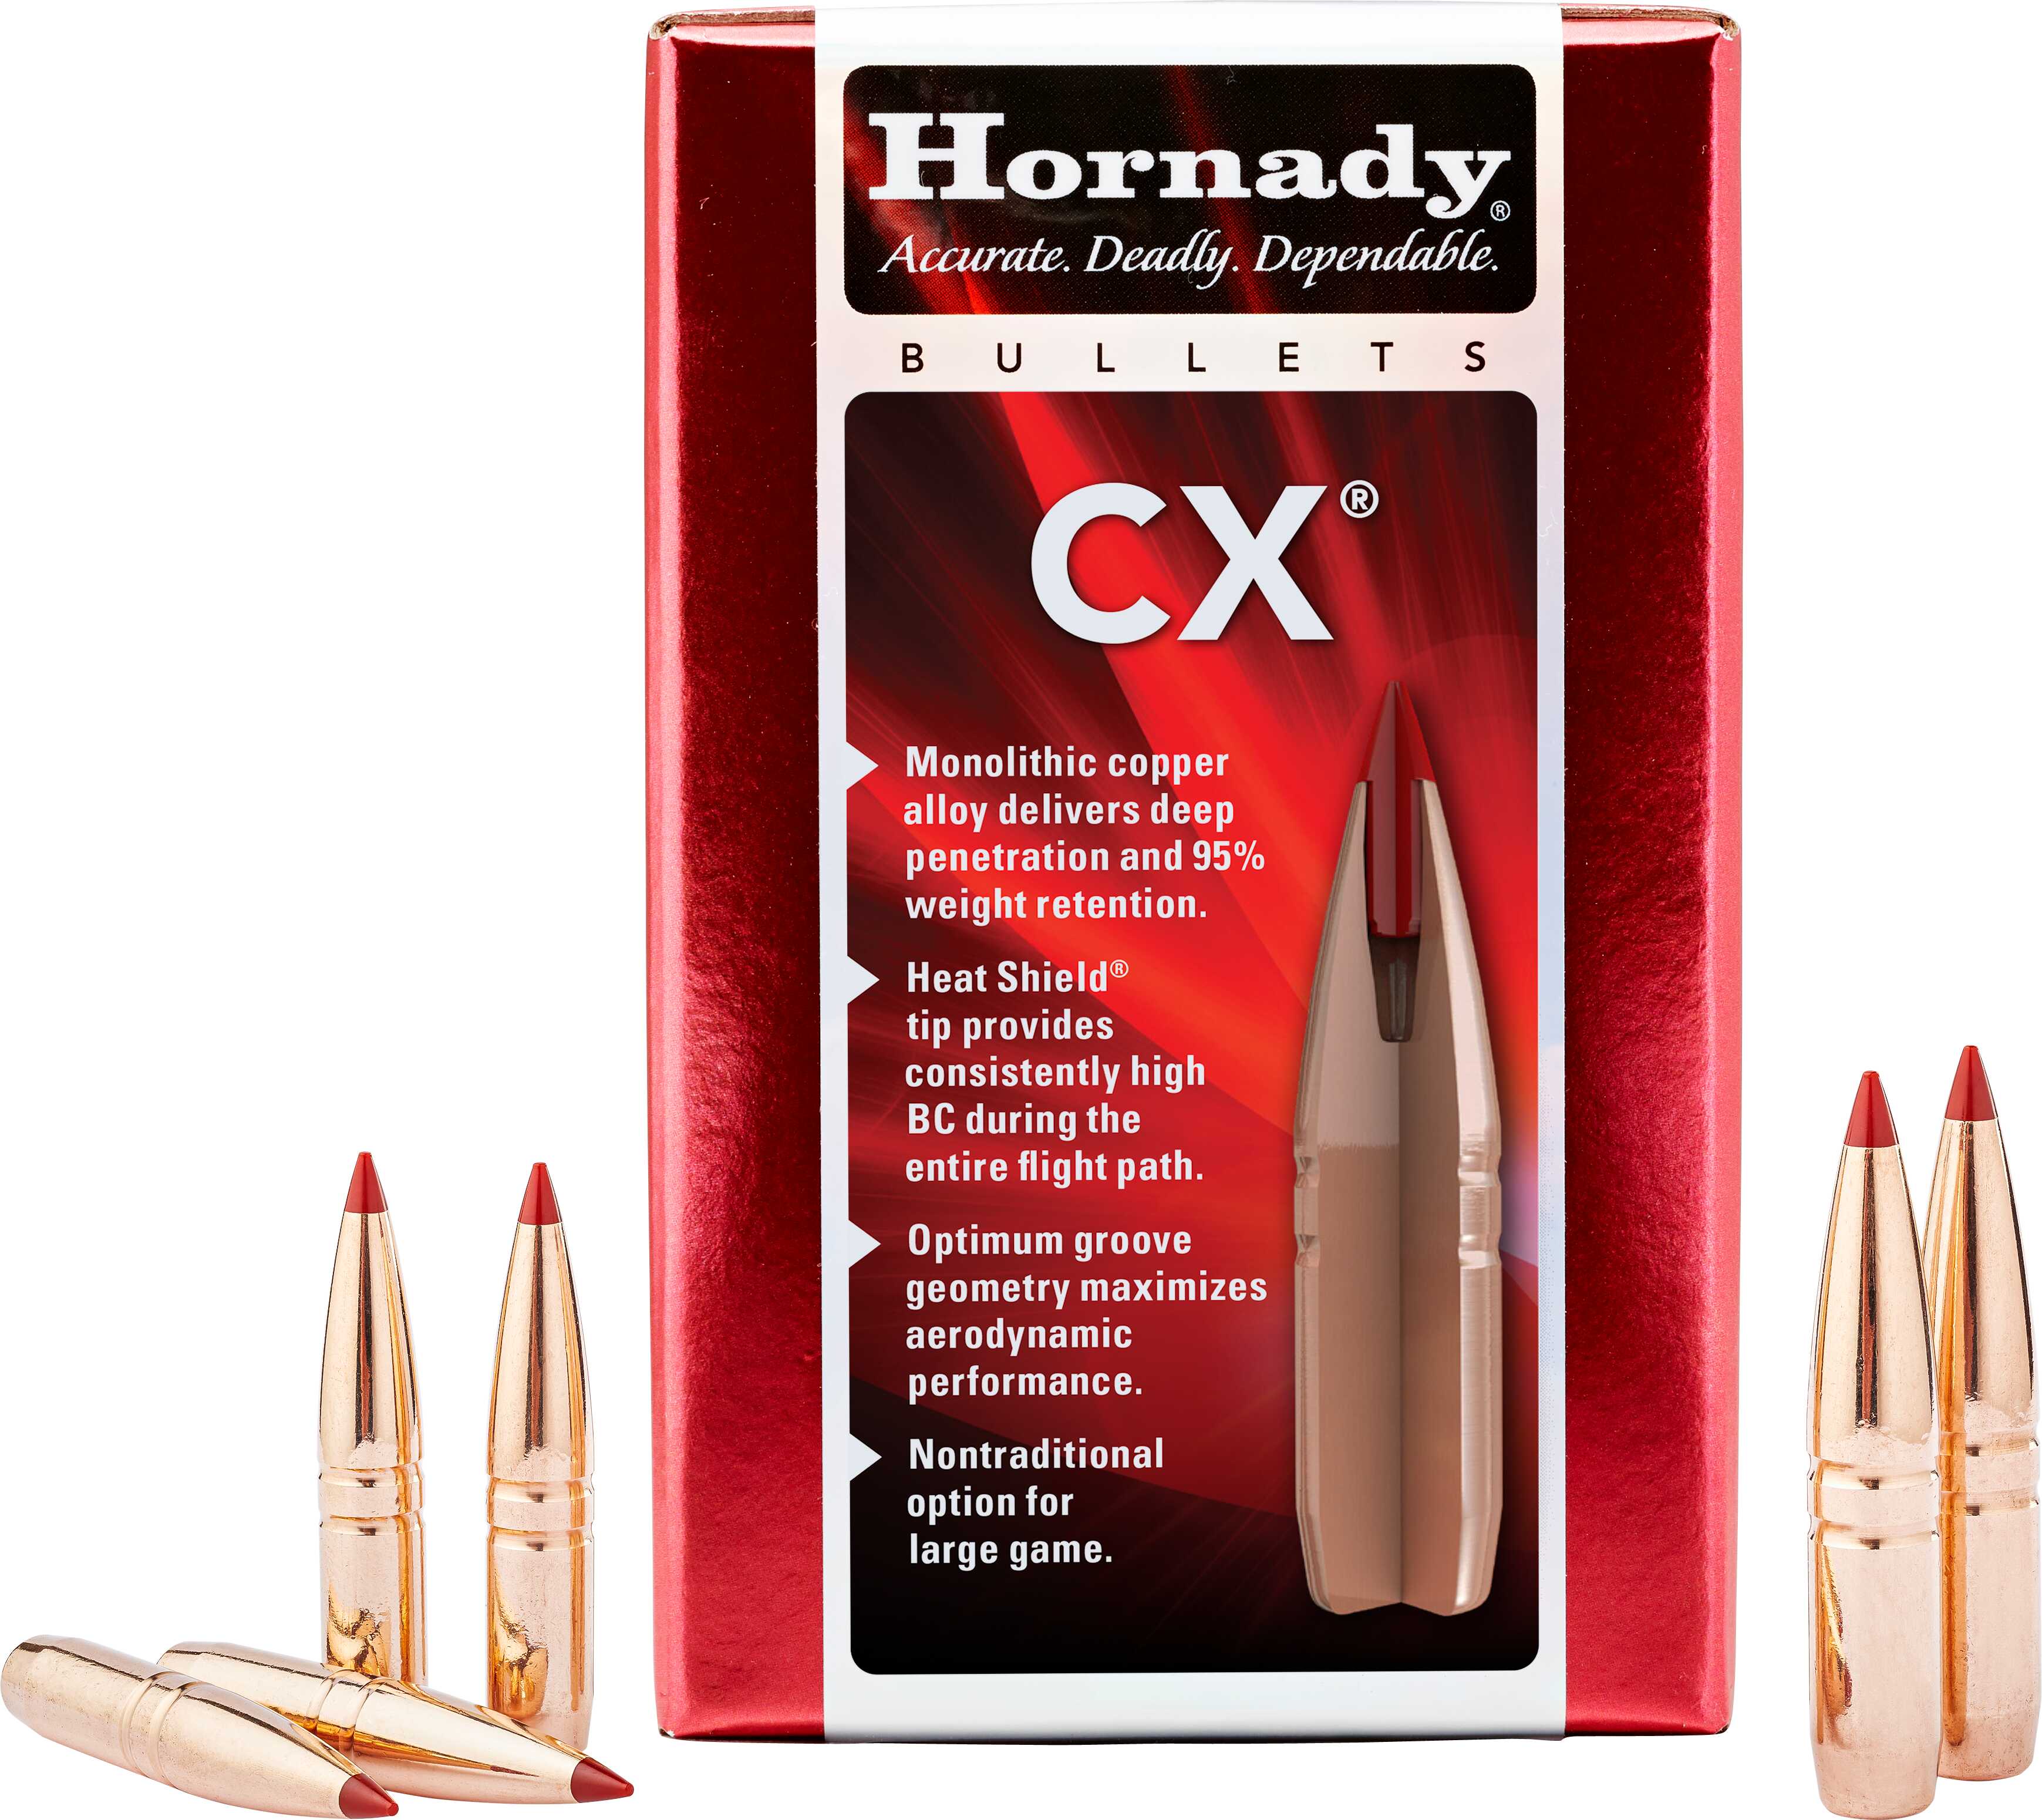 Hornady Bullets 30 Cal .308 110 Gr CX 50 Count